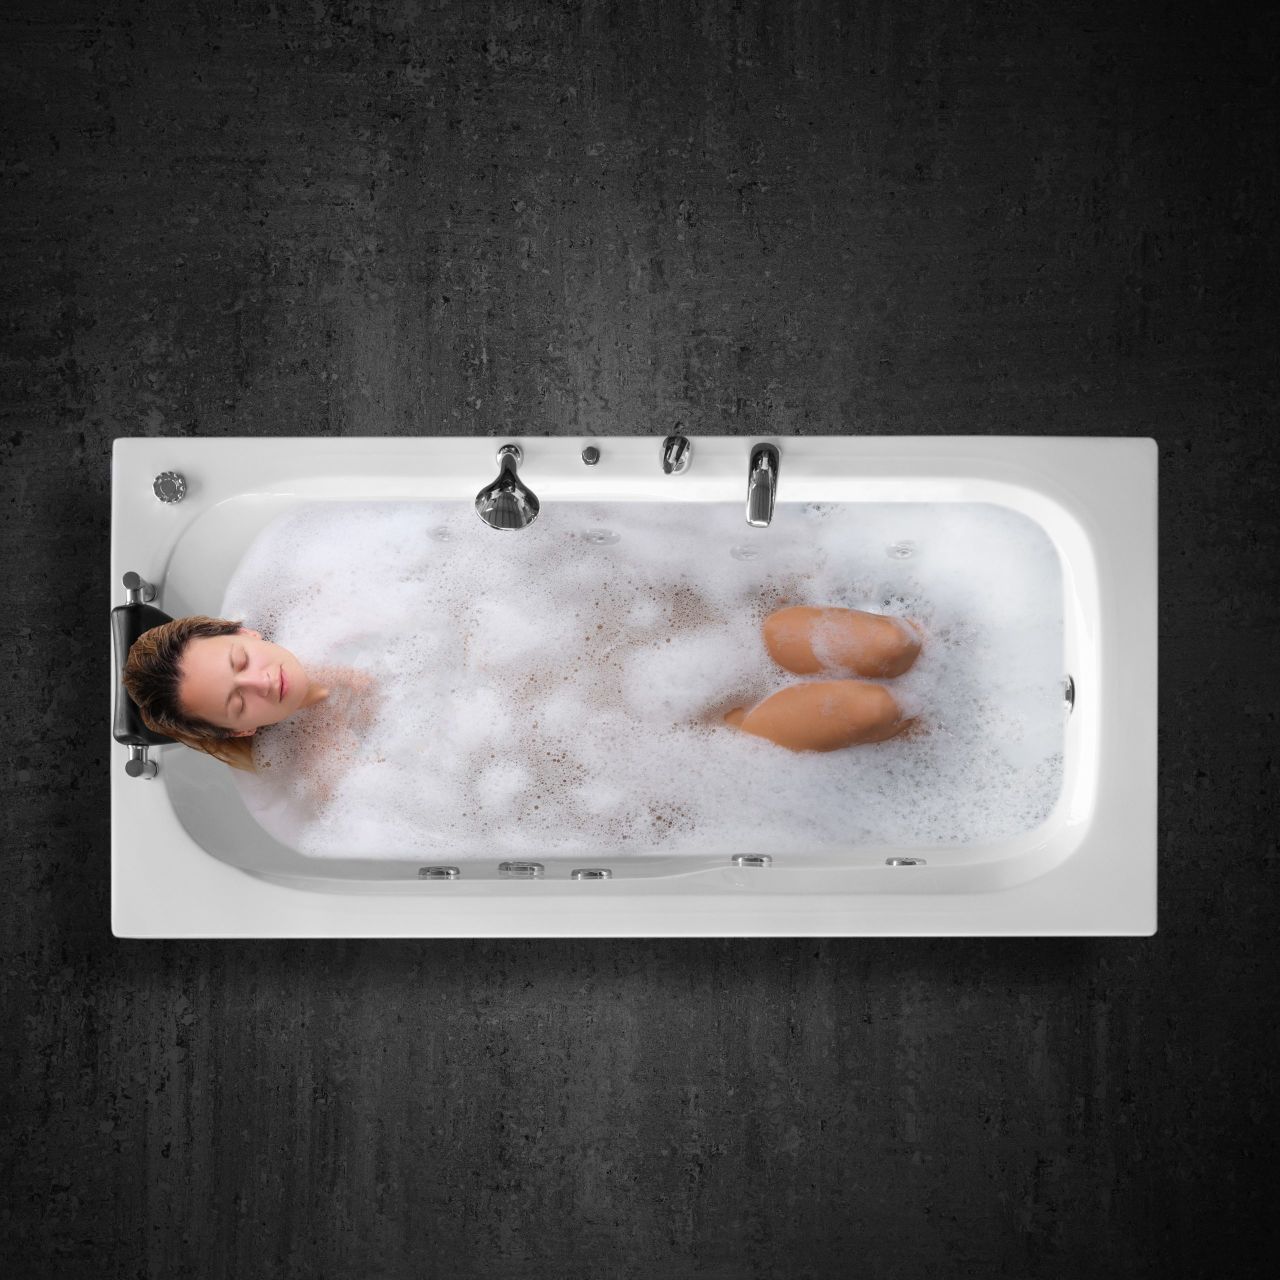 Konforlu Bir Banyo Deneyimi İçin Jakuzi Seçimi Neden Önemli